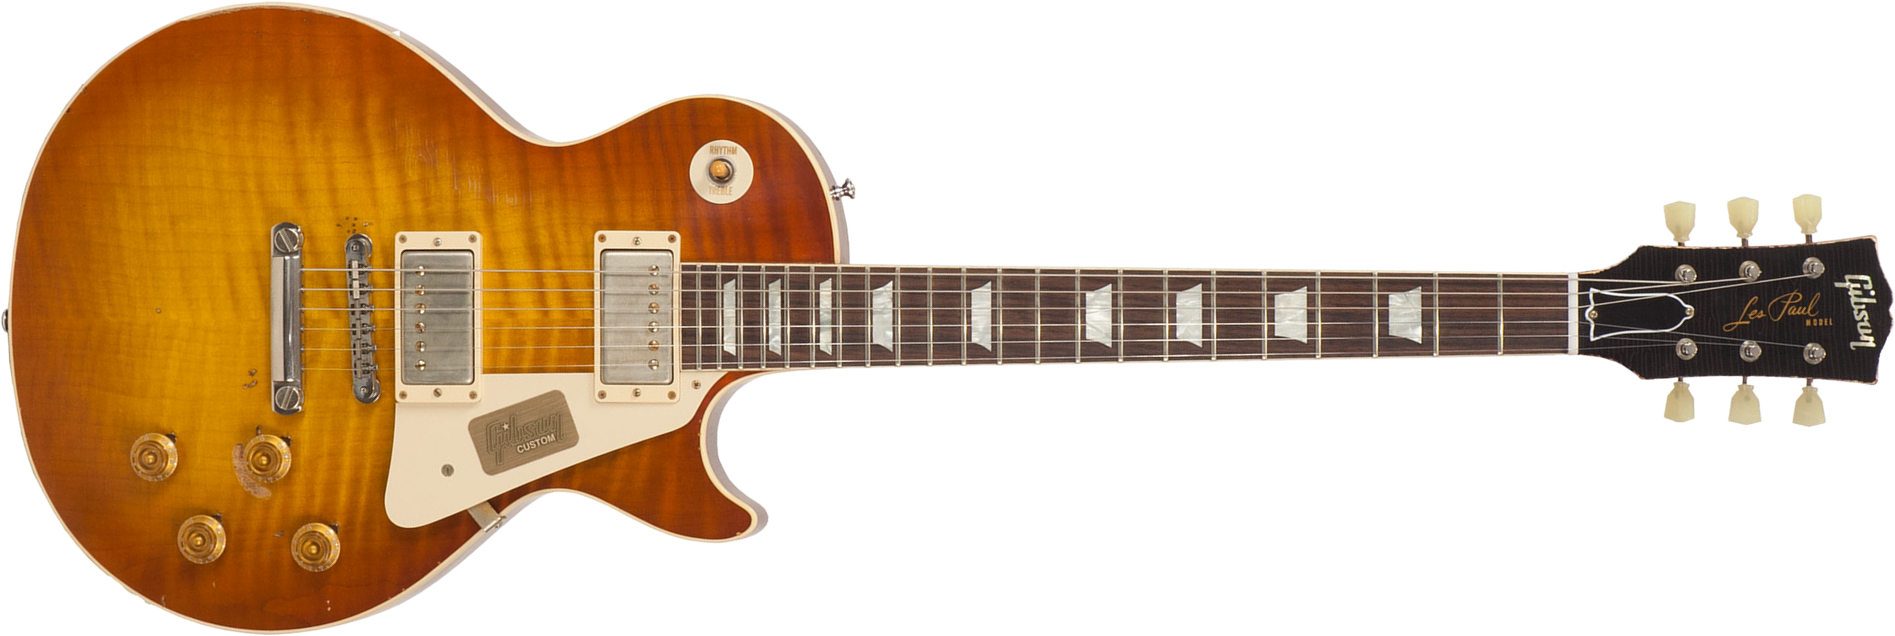 Gibson Custom Shop M2m Les Paul Standard 1959 2h Ht Rw #r961618 - Aged Sunrise Teaburst - Guitare Électrique Single Cut - Main picture